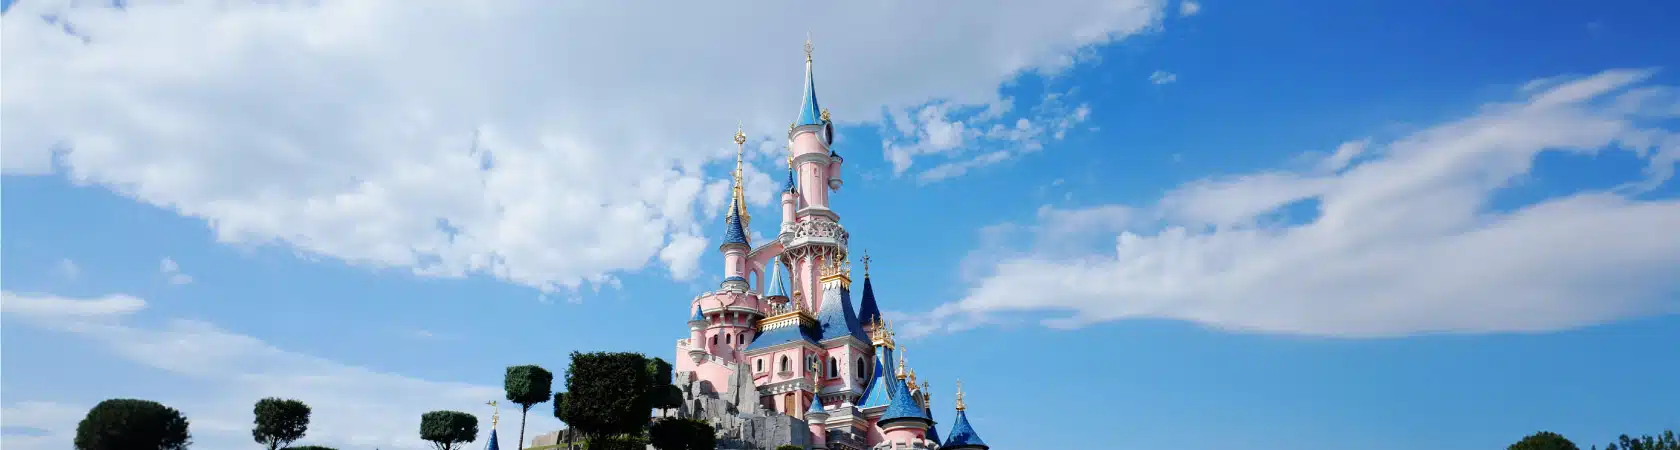 Disneyland Paris case study with Origina